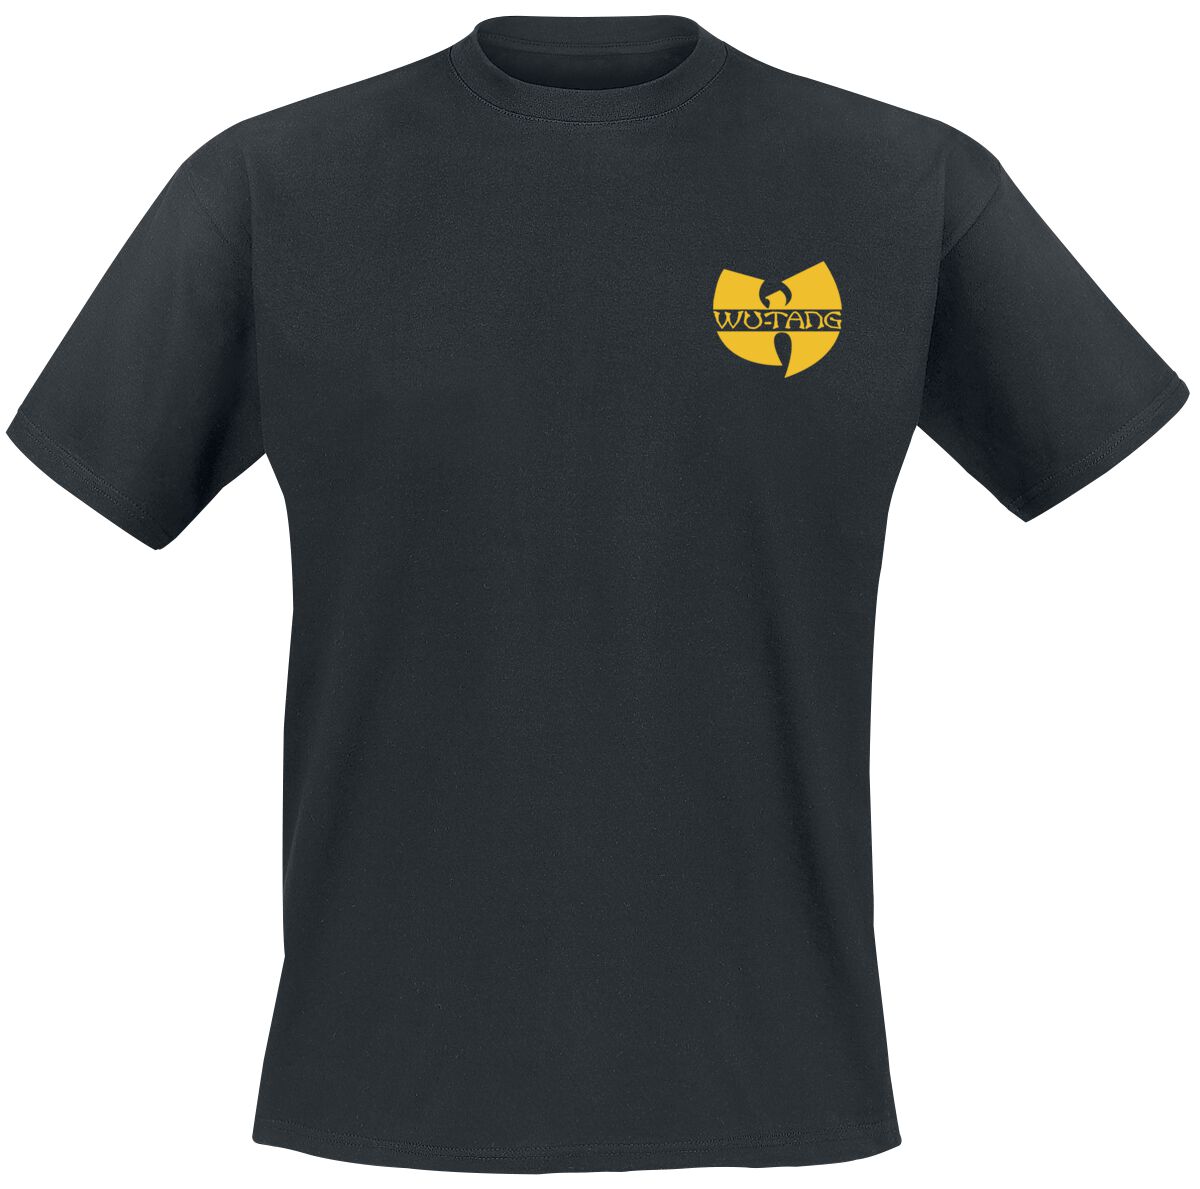 Wu-Tang Clan T-Shirt - Black Logo - S bis XXL - für Männer - Größe XXL - schwarz  - Lizenziertes Merchandise!